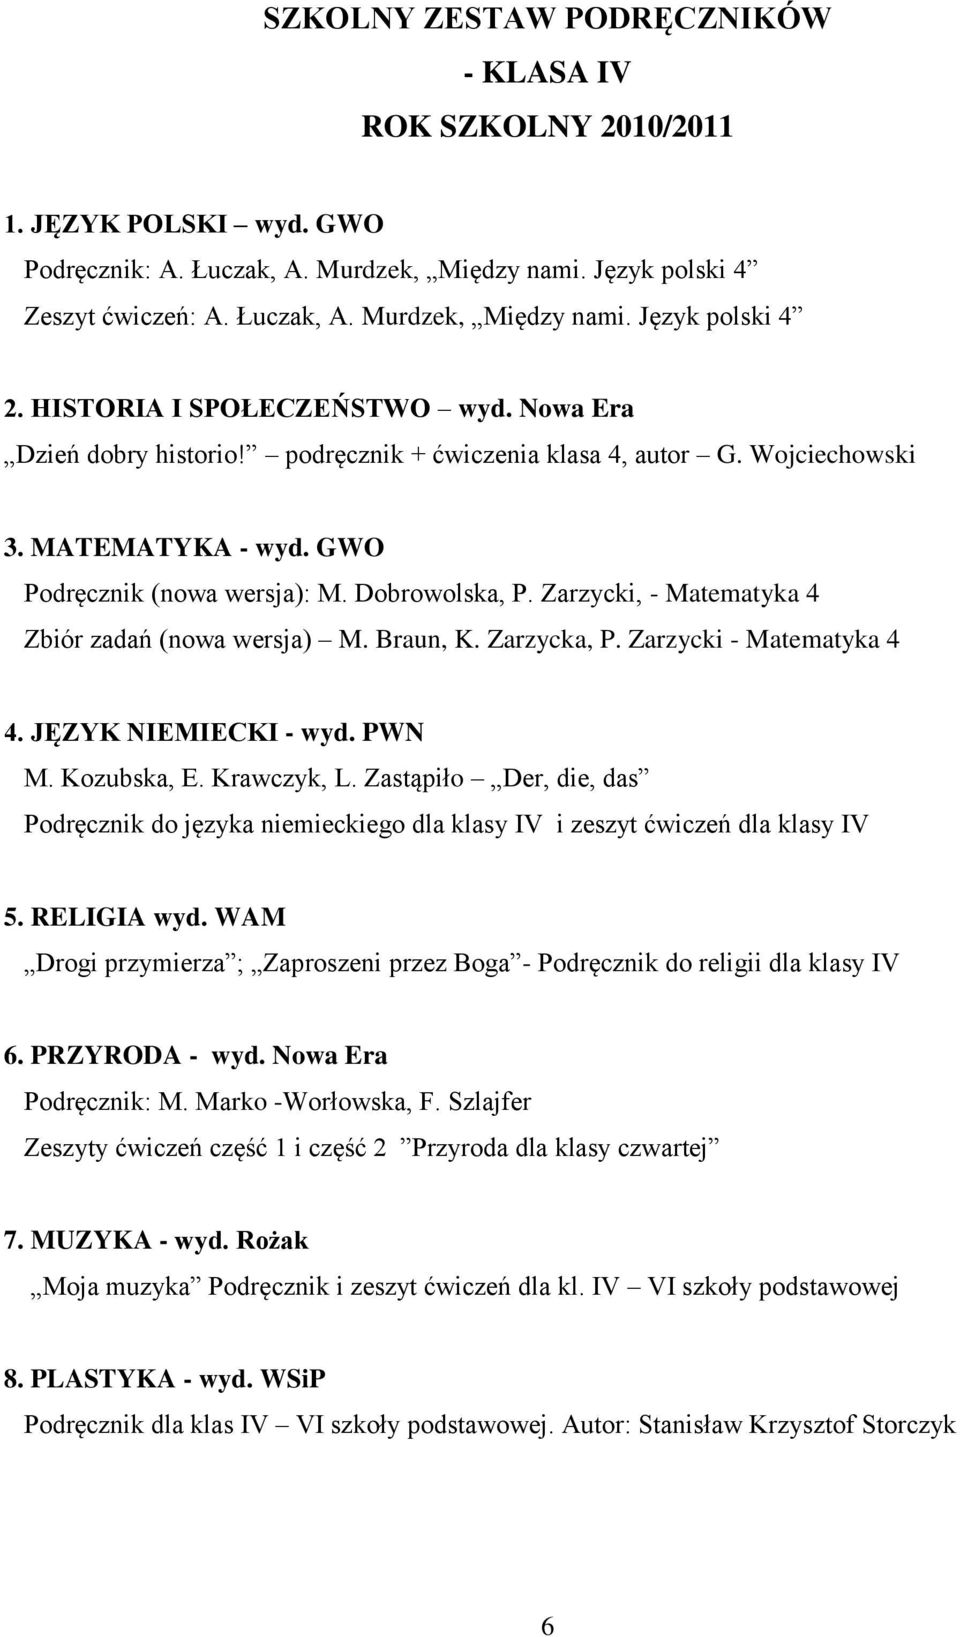 Zarzycki, - Matematyka 4 Zbiór zadań (nowa wersja) M. Braun, K. Zarzycka, P. Zarzycki - Matematyka 4 4. JĘZYK NIEMIECKI - wyd. PWN M. Kozubska, E. Krawczyk, L.